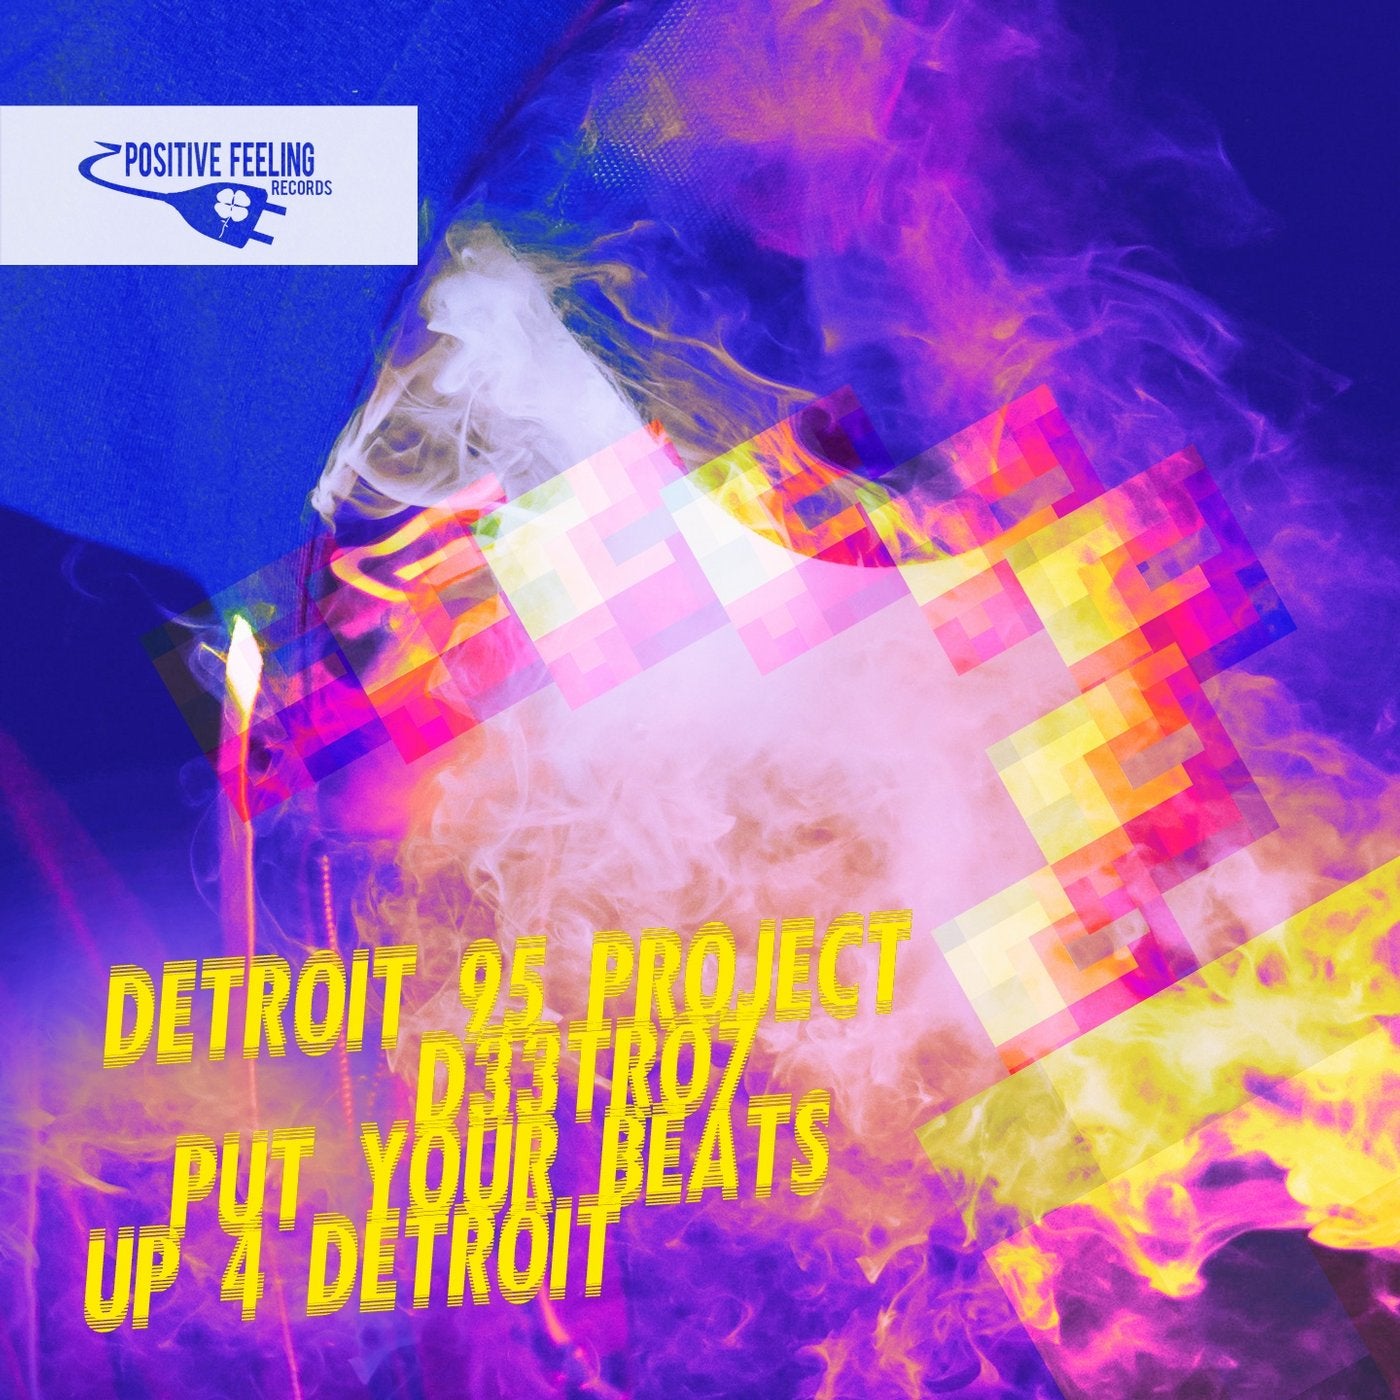 Put Your Beats up 4 Detroit